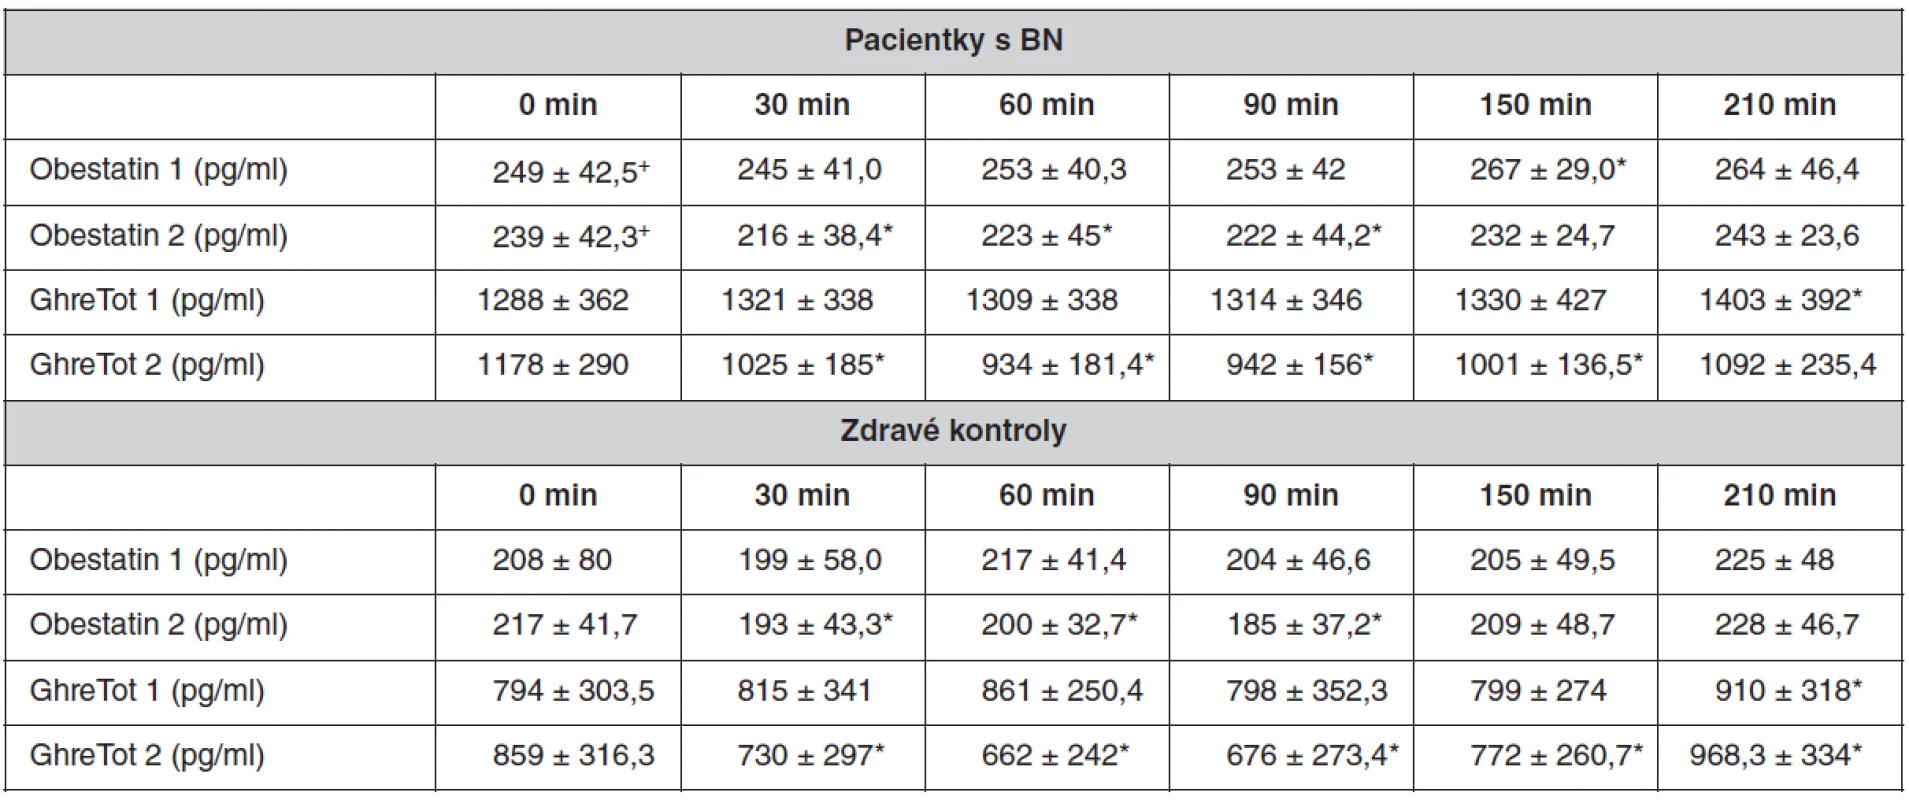 Preprandiální (0 min) a postprandiální (30, 60, 90, 150, 210 min) hladina plazmatického ghrelinu a obestatinu u pacientek s BN a u kontrolních žen. Počet kontrolních žen i pacientek je 6, hodnoty jsou uvedeny jako průměr ± SEM